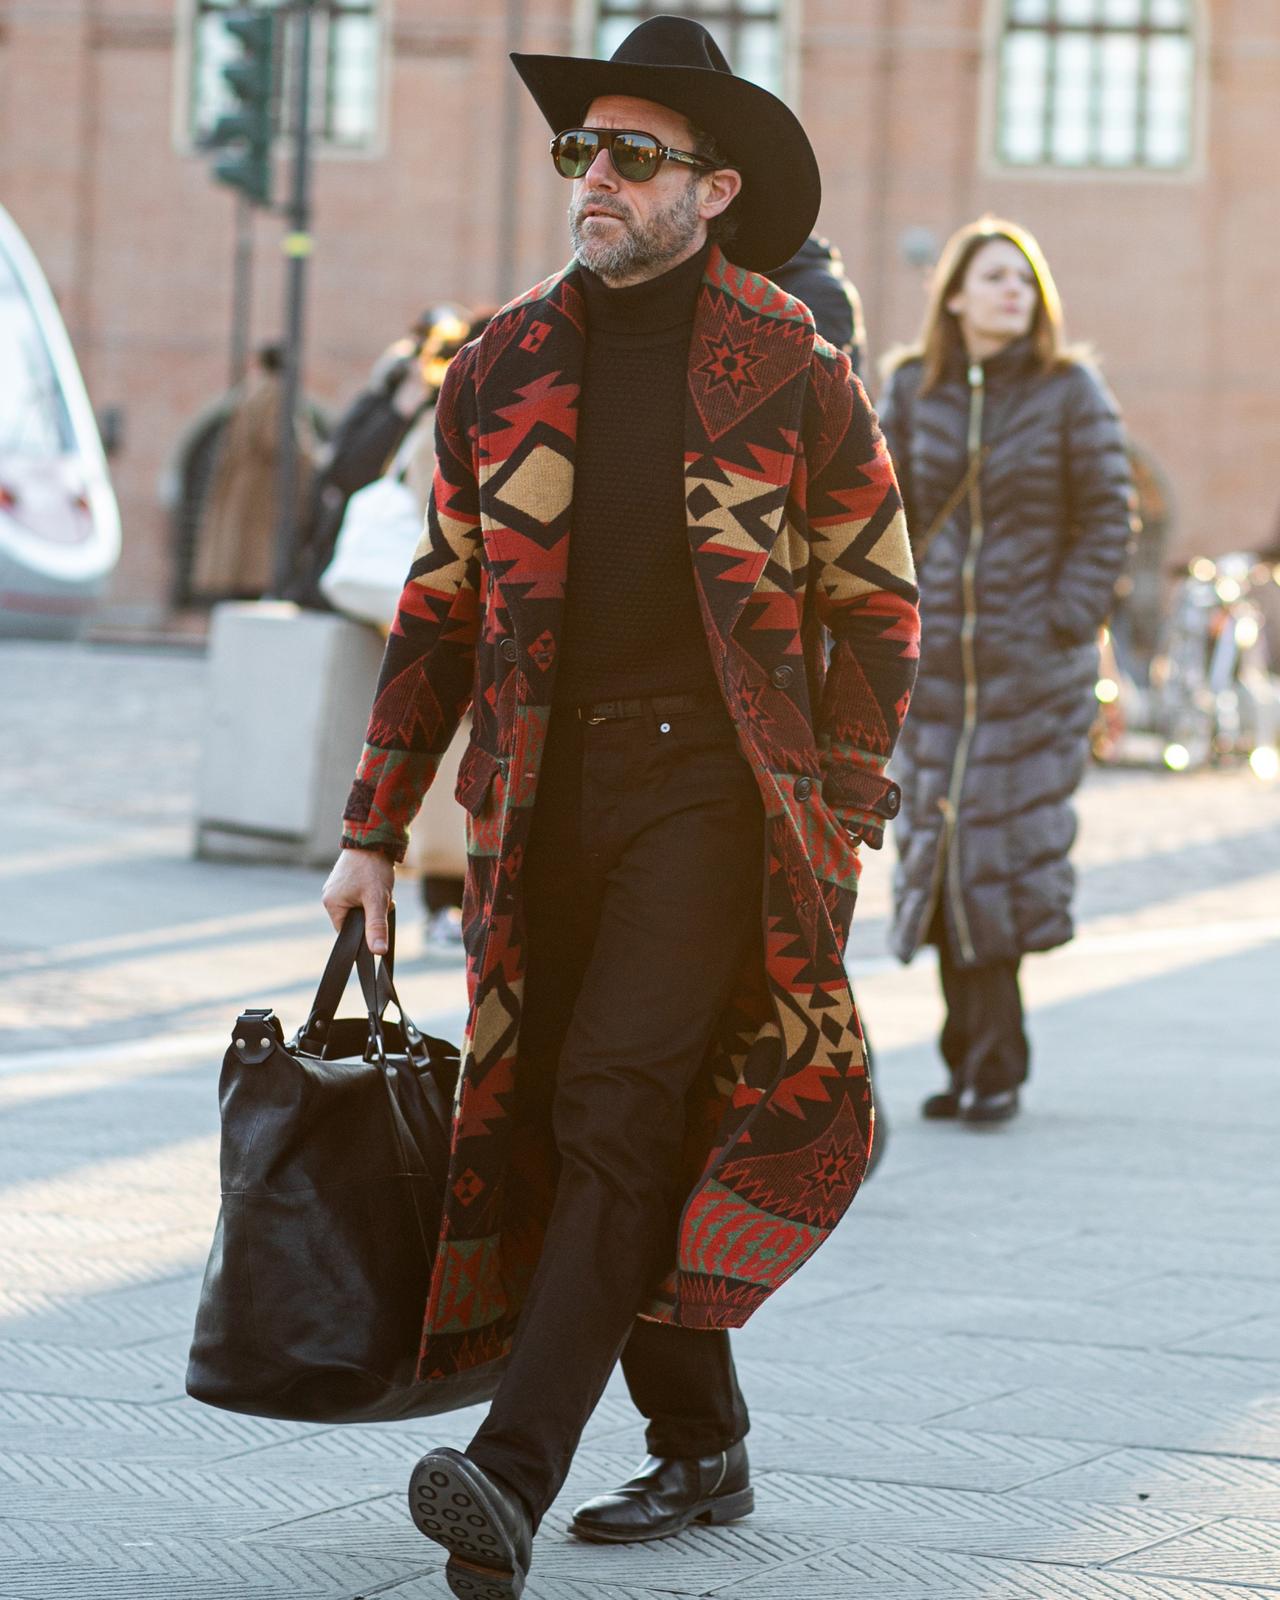 Un homme au chapeau de cowboy marchant dans une rue avec un sac